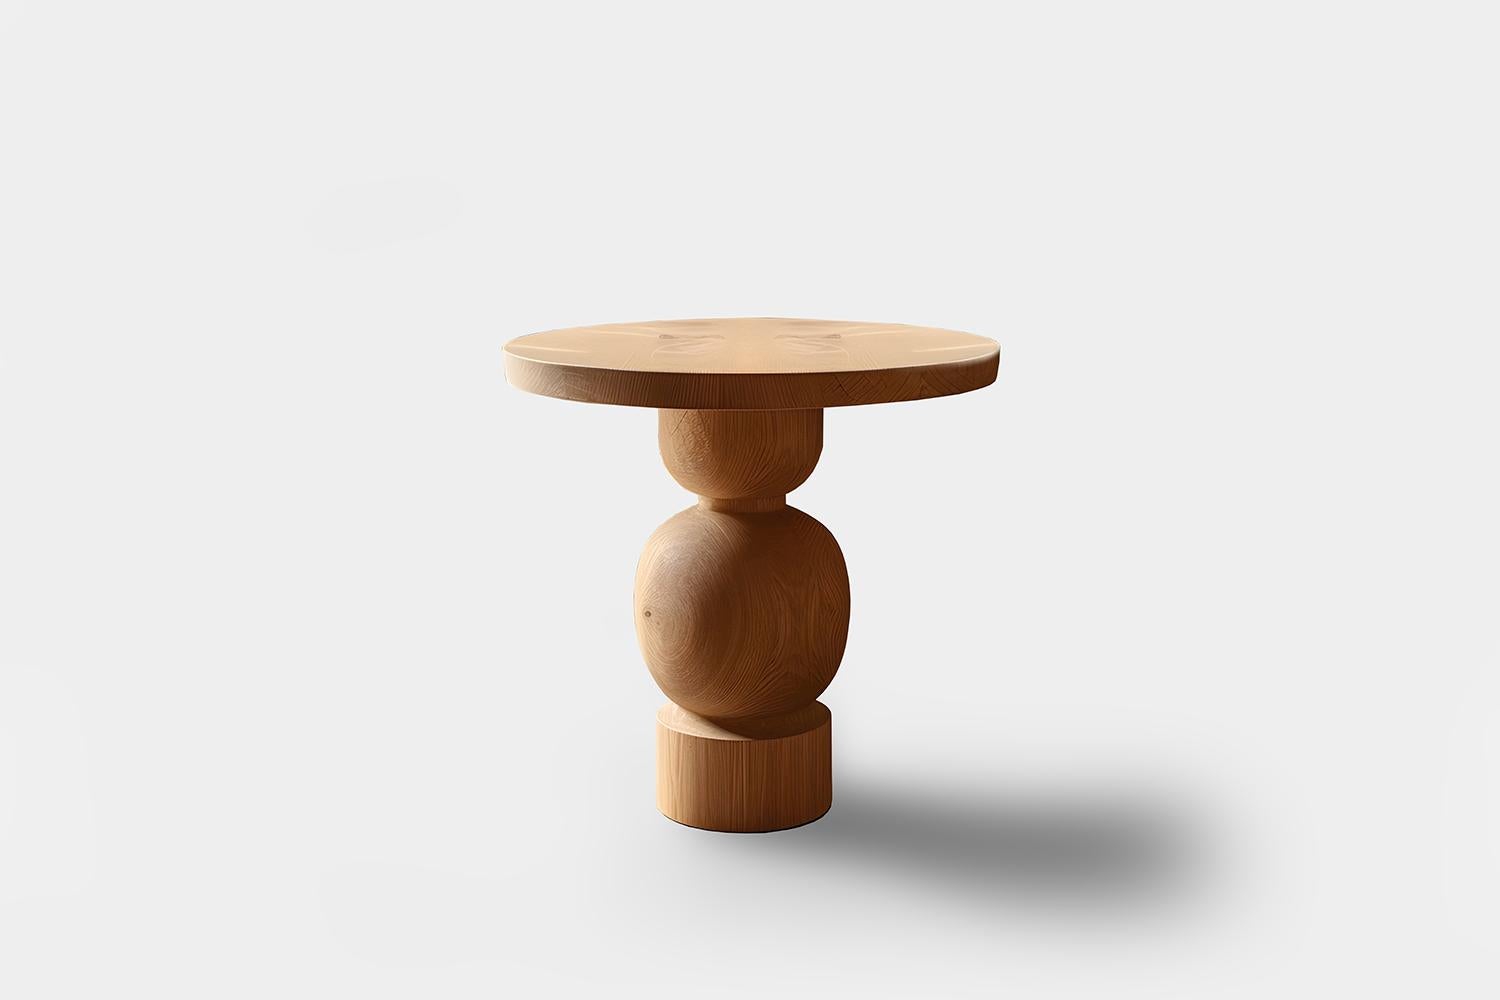 Socle table d'appoint, table auxiliaire, table de nuit

Socle est une petite table en bois massif conçue par l'équipe de design de NONO. Réalisée en bois massif, sa construction élaborée sert de support, à l'instar d'un socle pour une statue ou une